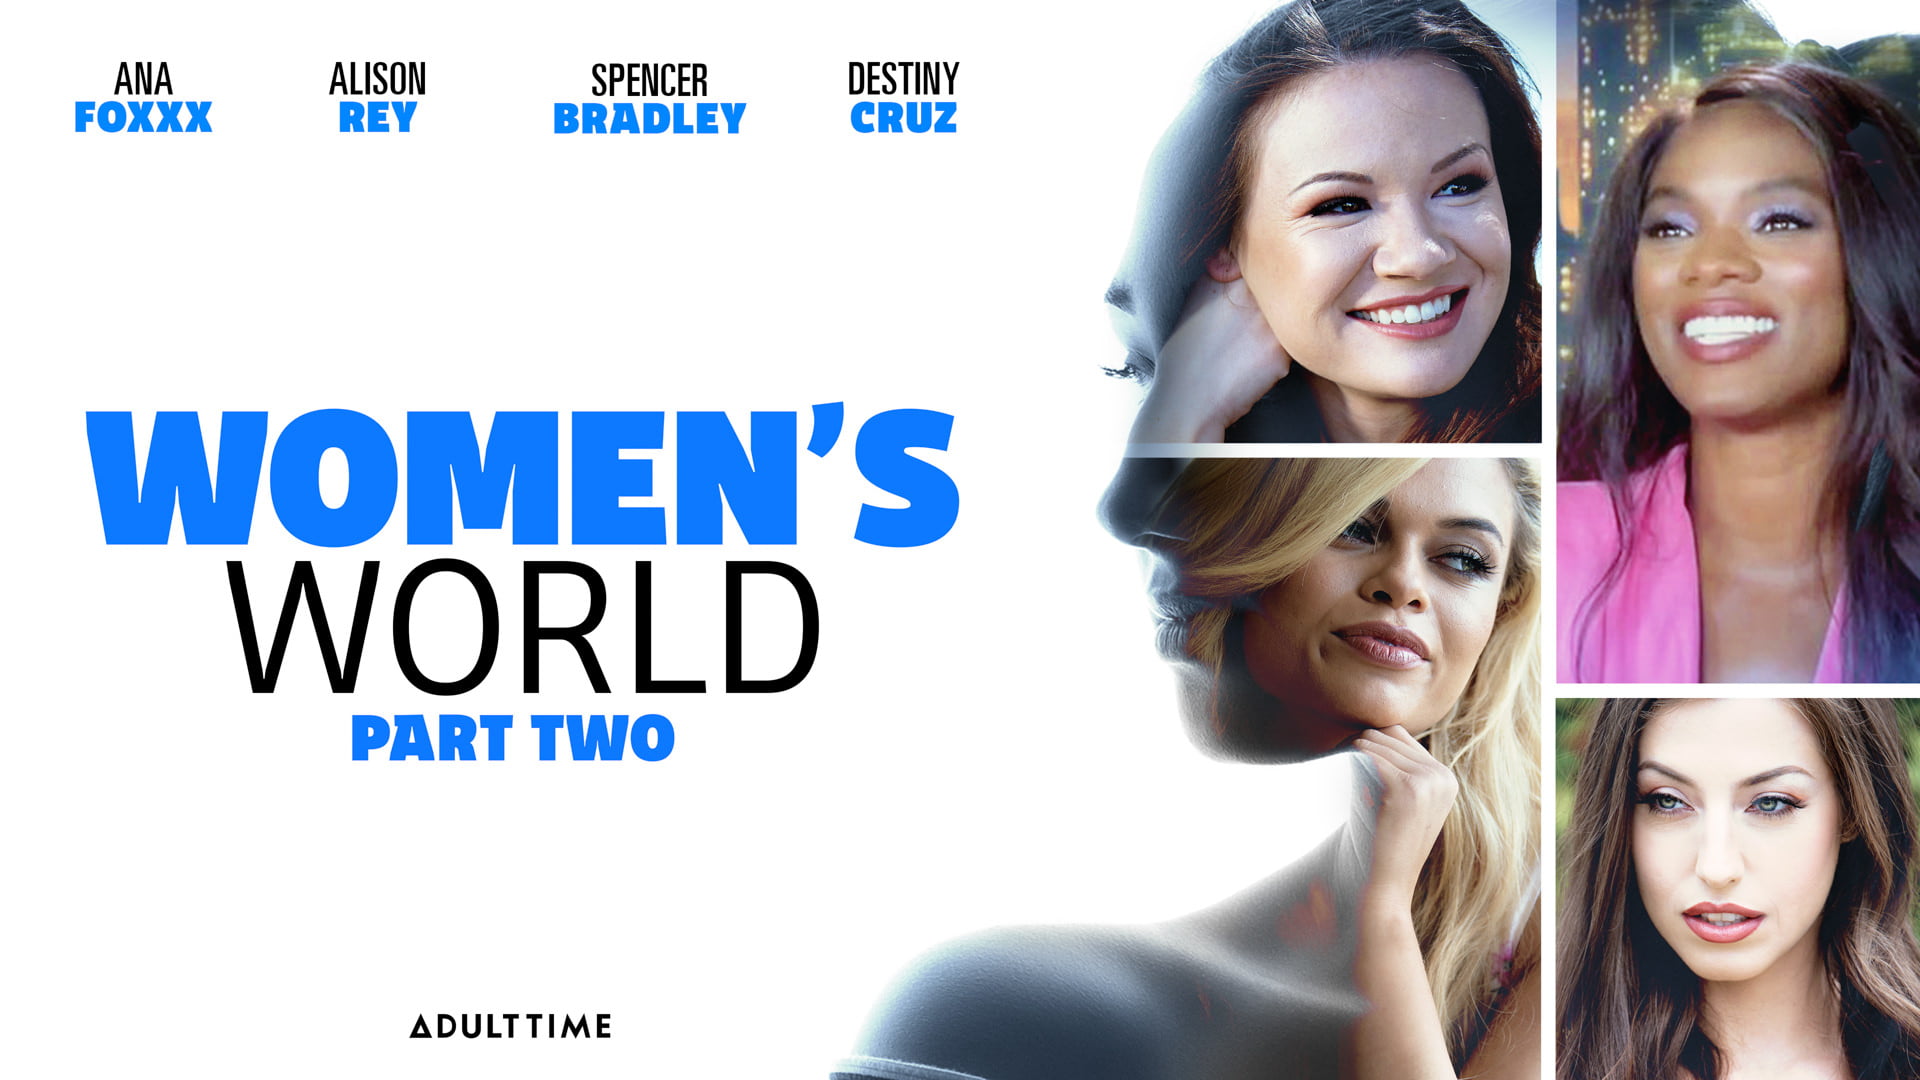 WomensWorld - Ana Foxxx, Alison Rey, Spencer Bradley And Destiny Cruz - Women